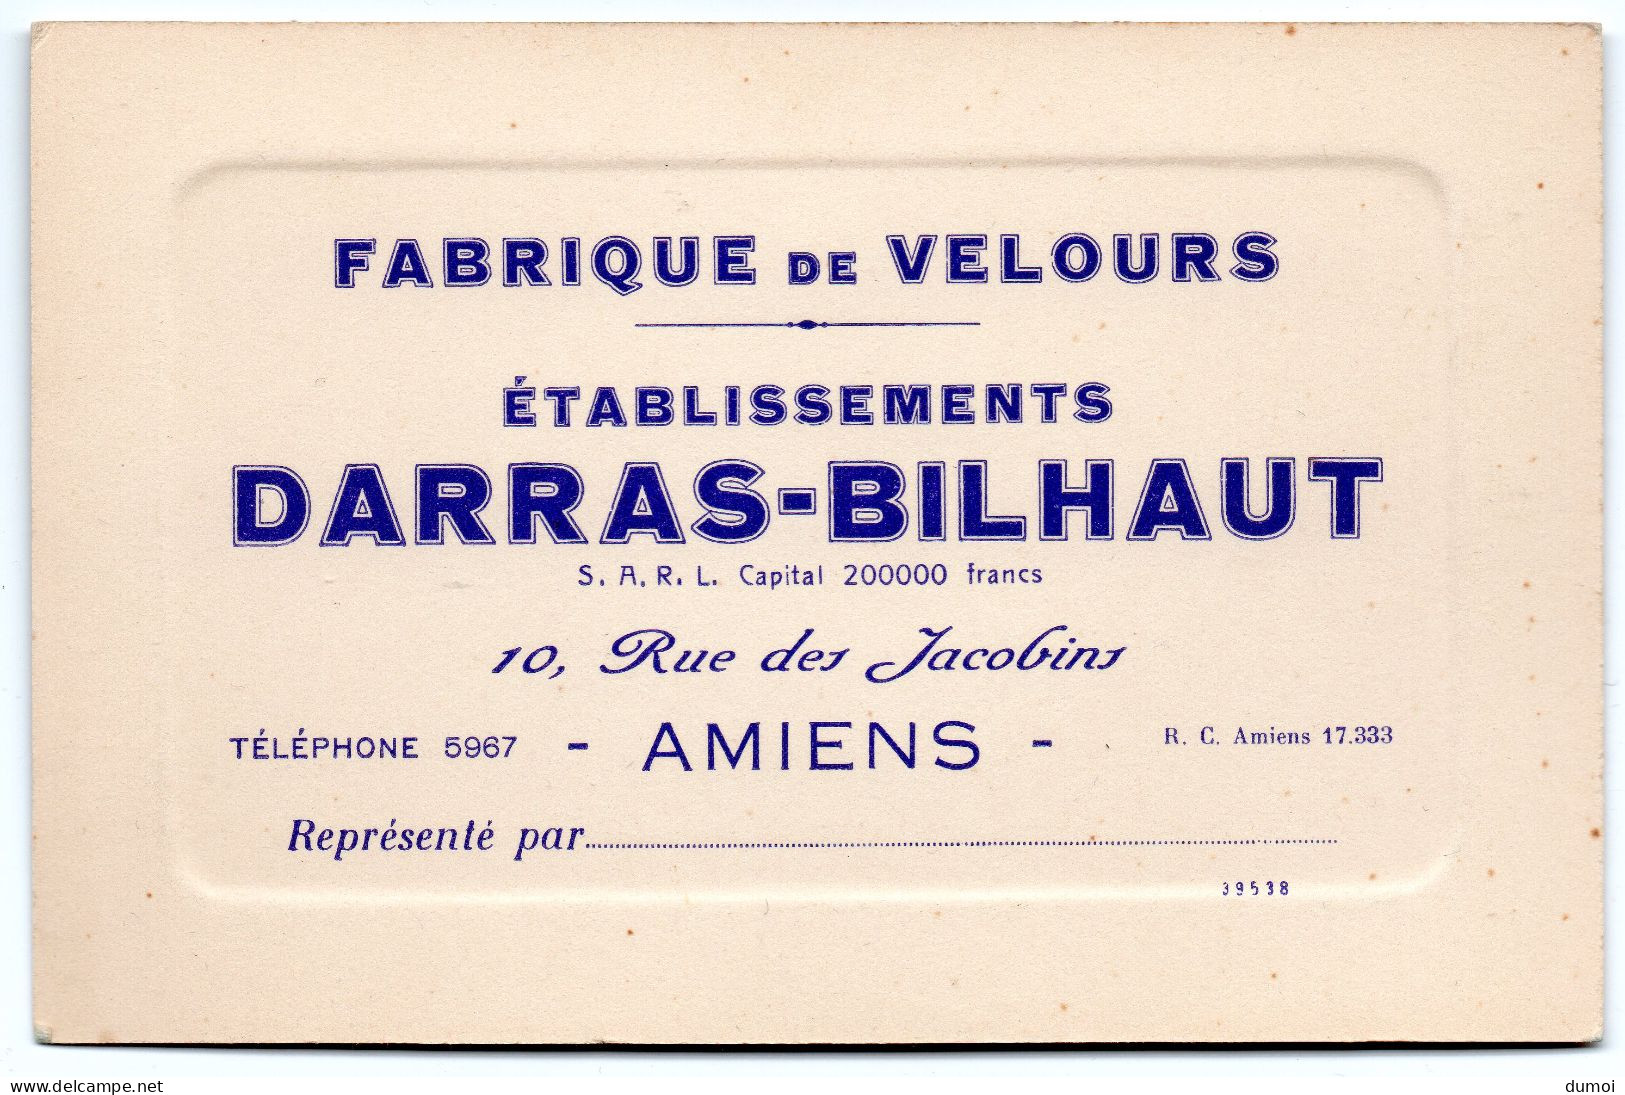 AMIENS   -  10 Rue Des Jacobins  Fabrique De Velours Etablissement DARRAS - BILHAUT - Cartes De Visite